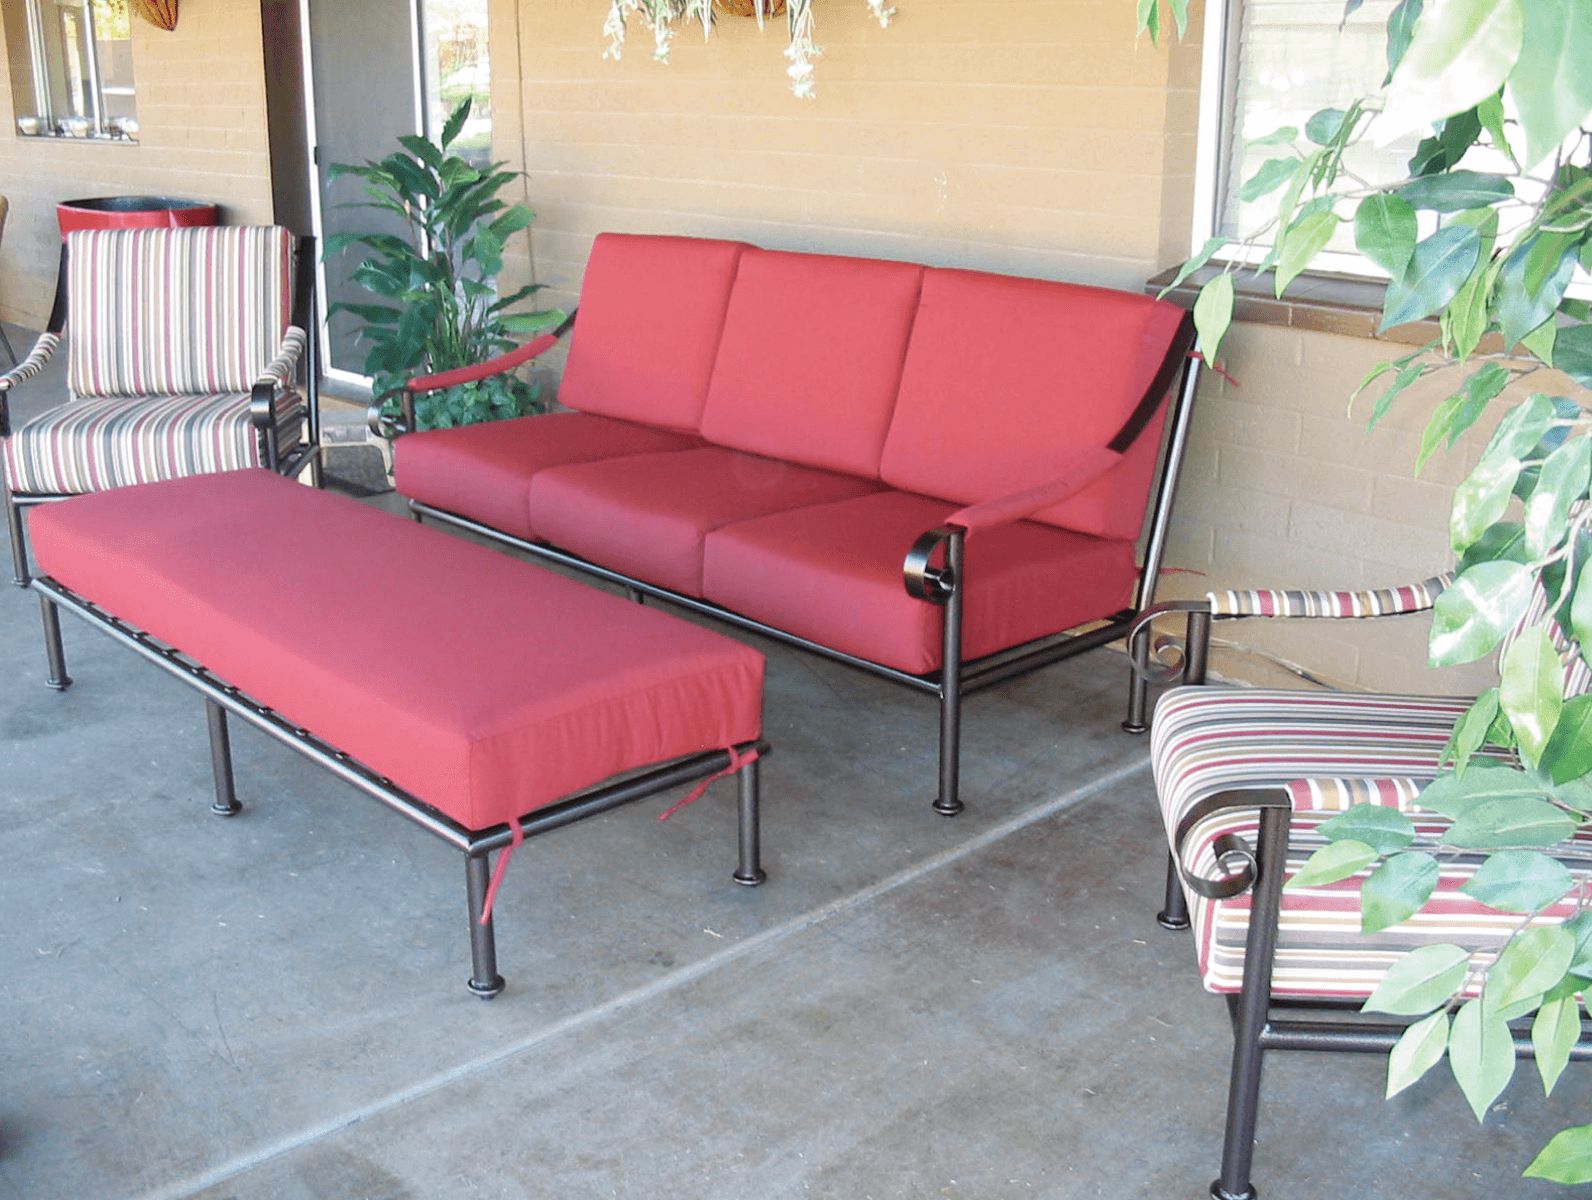 red-furniture-set